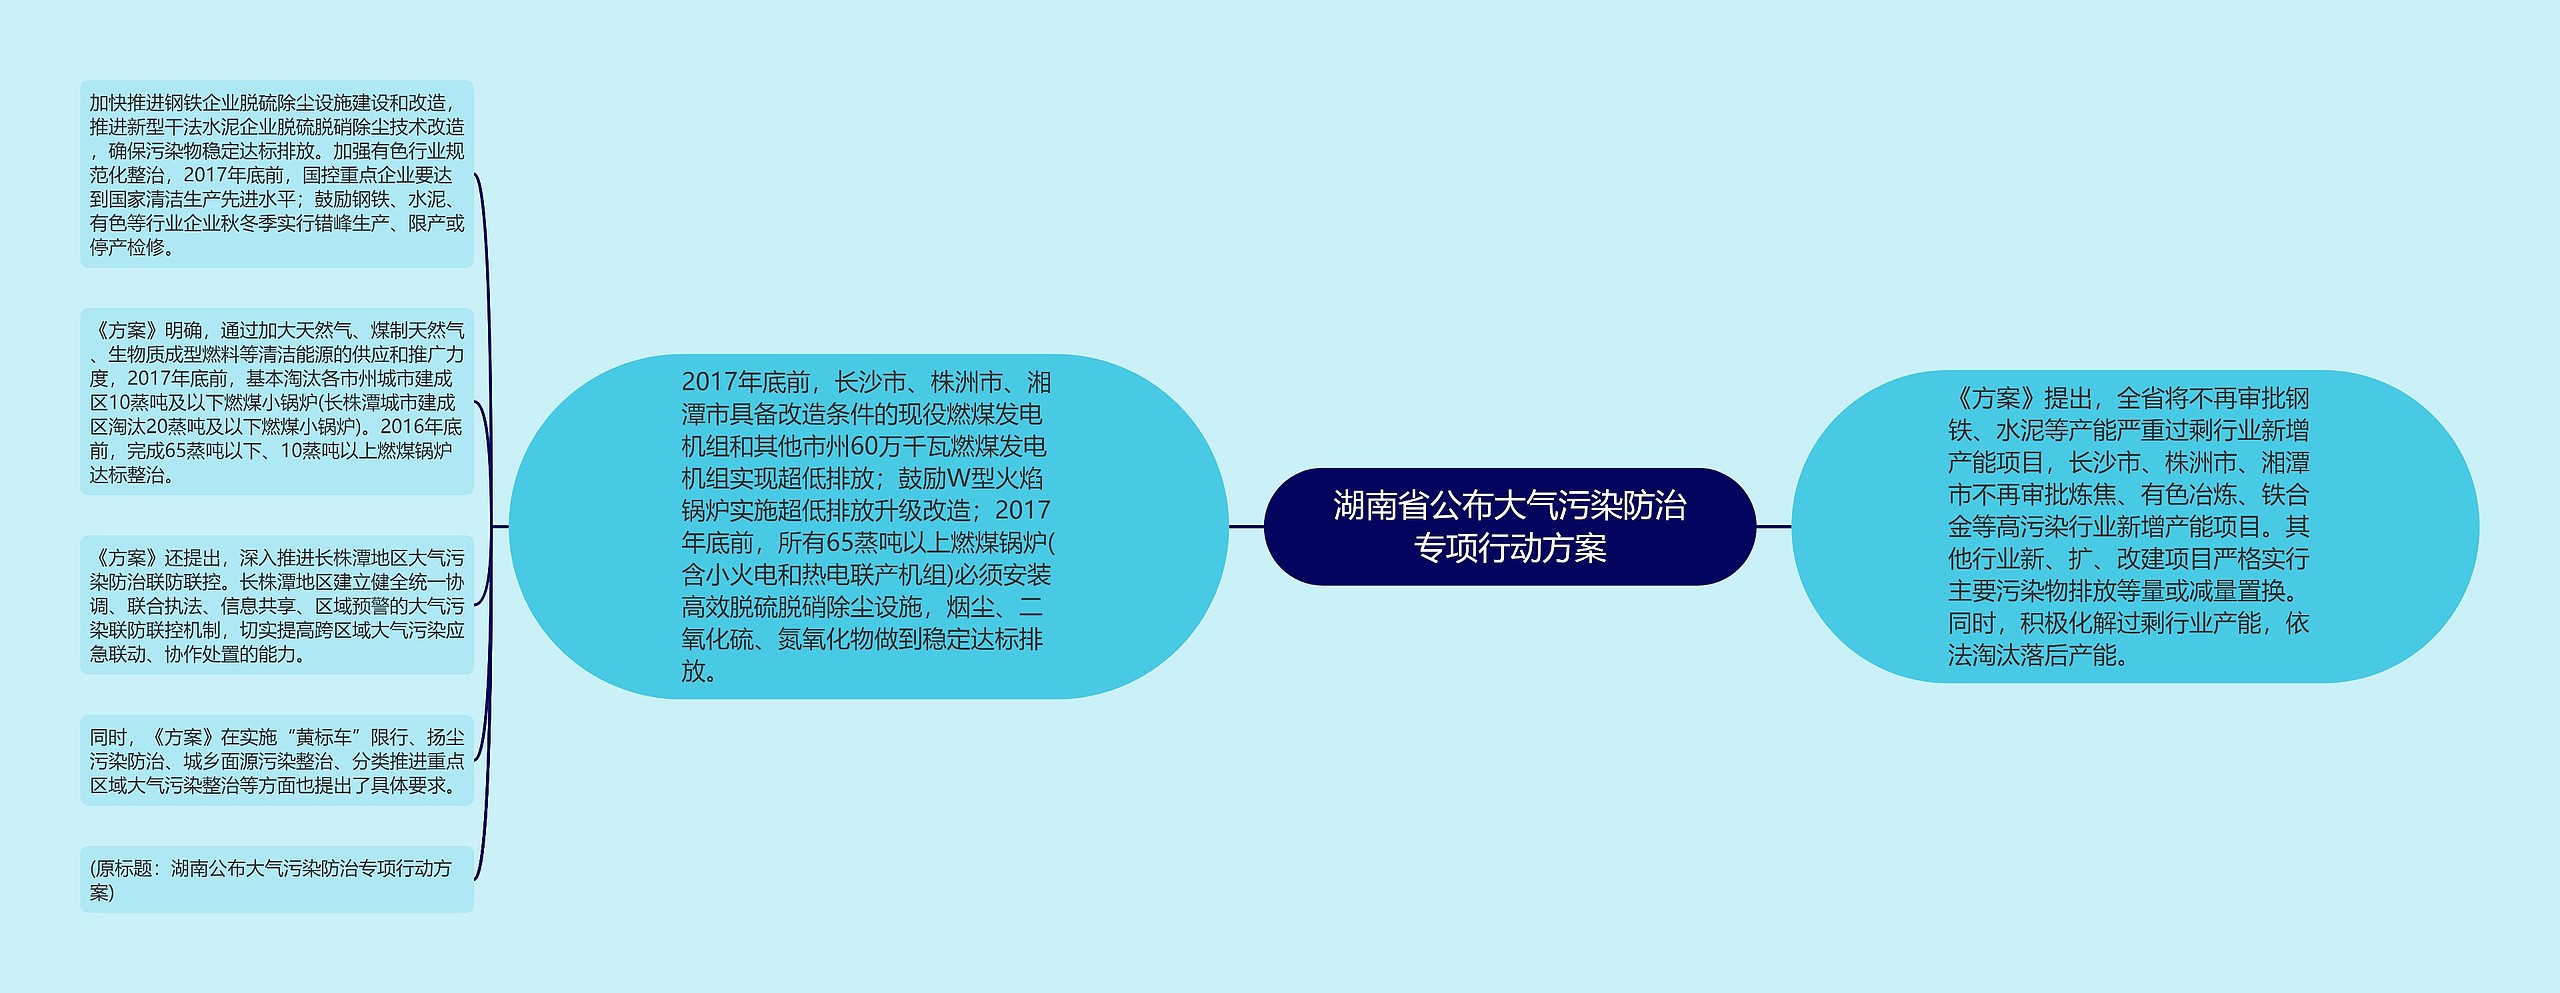 湖南省公布大气污染防治专项行动方案思维导图